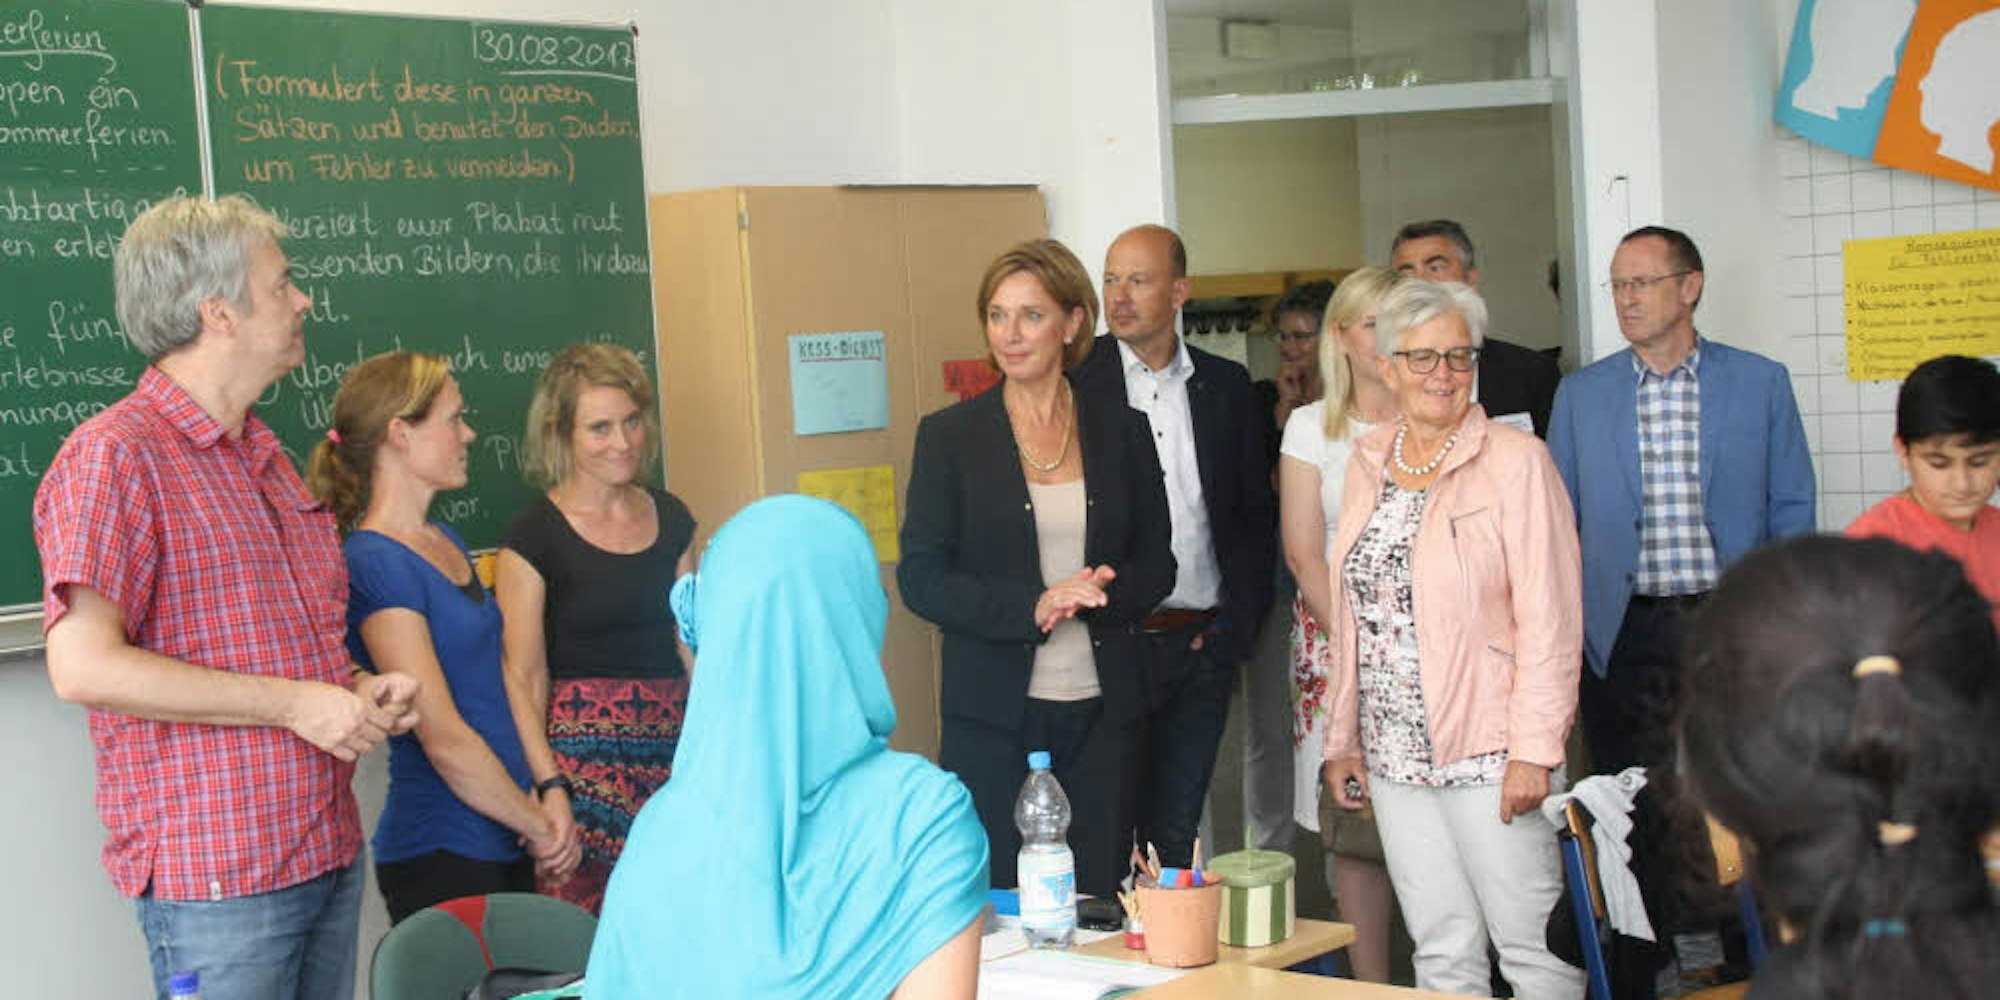 Schulministerin Yvonne Gebauer (Mitte) besuchte am ersten Schultag nach den Sommerferien die Hauptschule Herbertskaul in Frechen. Sie sah sich den Unterricht in verschiedenen Klassen an.